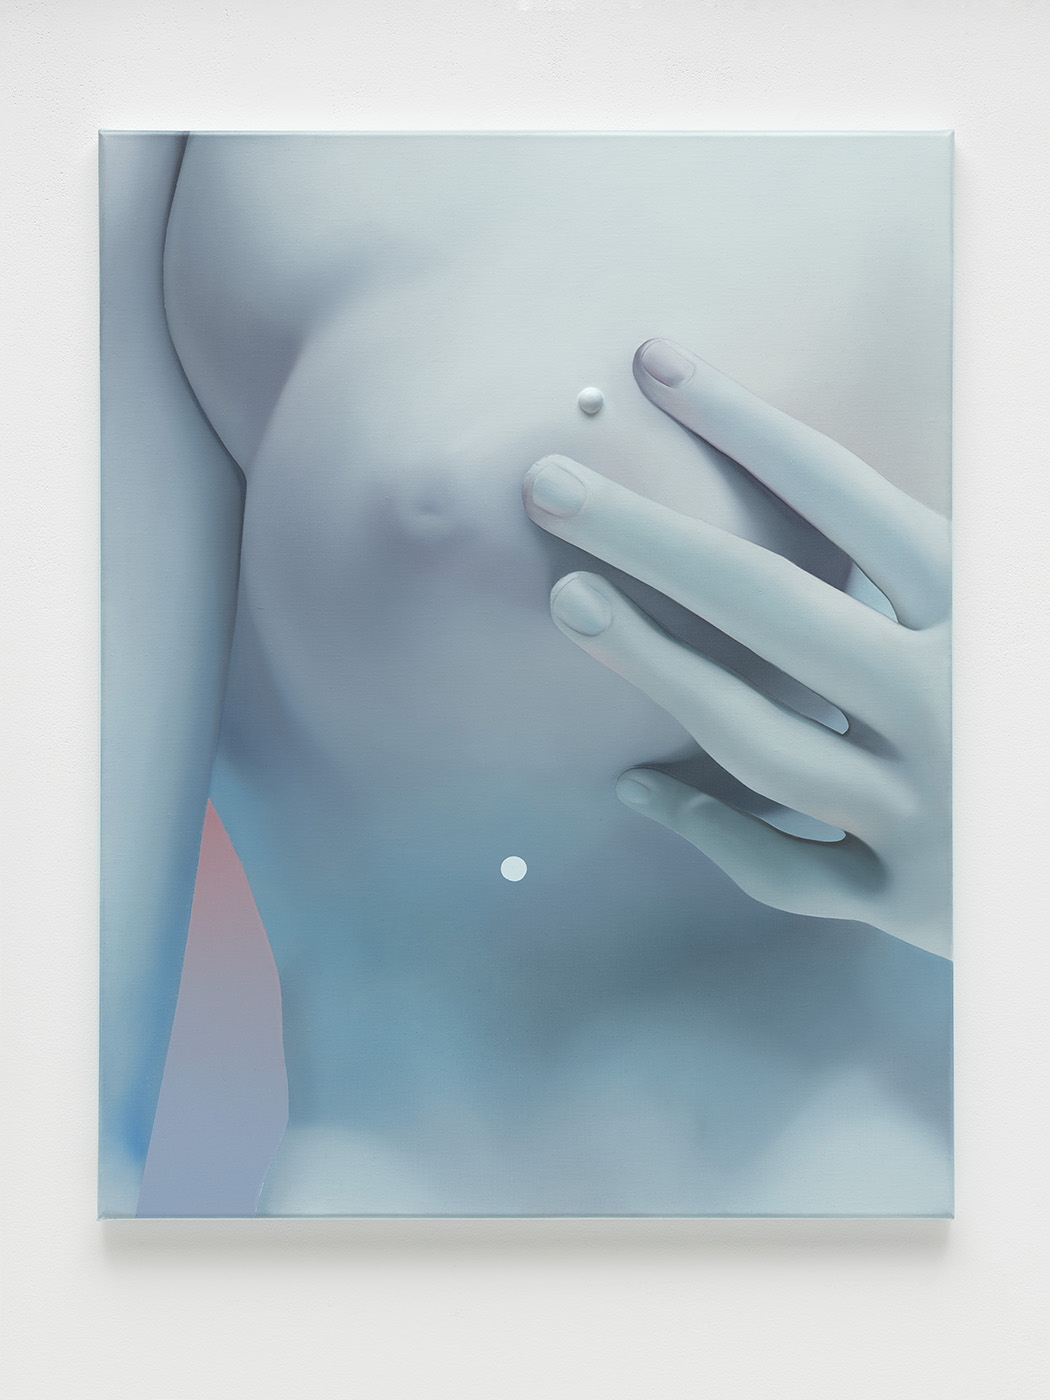 Vivian Greven, Quella V, 2021, oil and acrylic on canvas, 80 x 63 cm, 31 1/2 x 24 3/4 in.